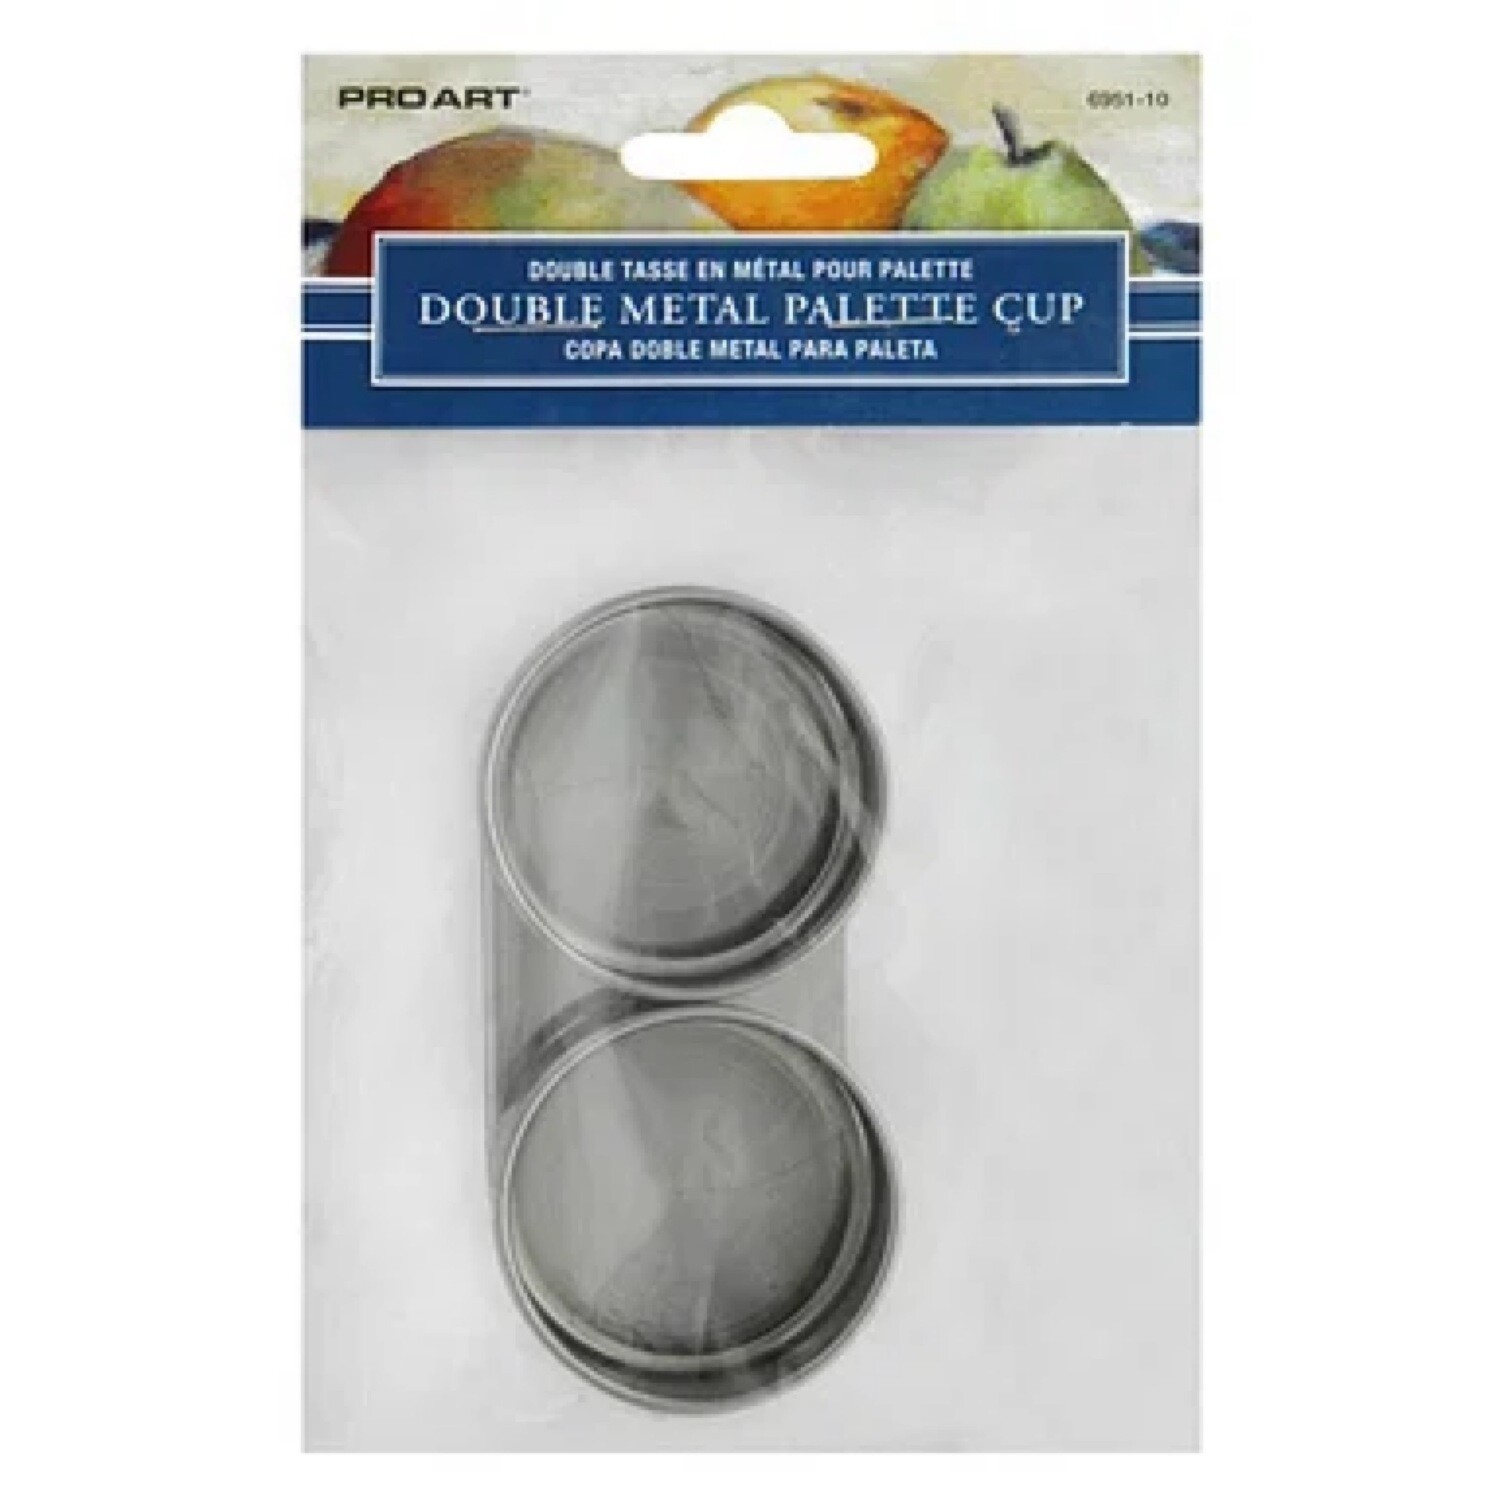 Pro Art Double Metal Palette Cup